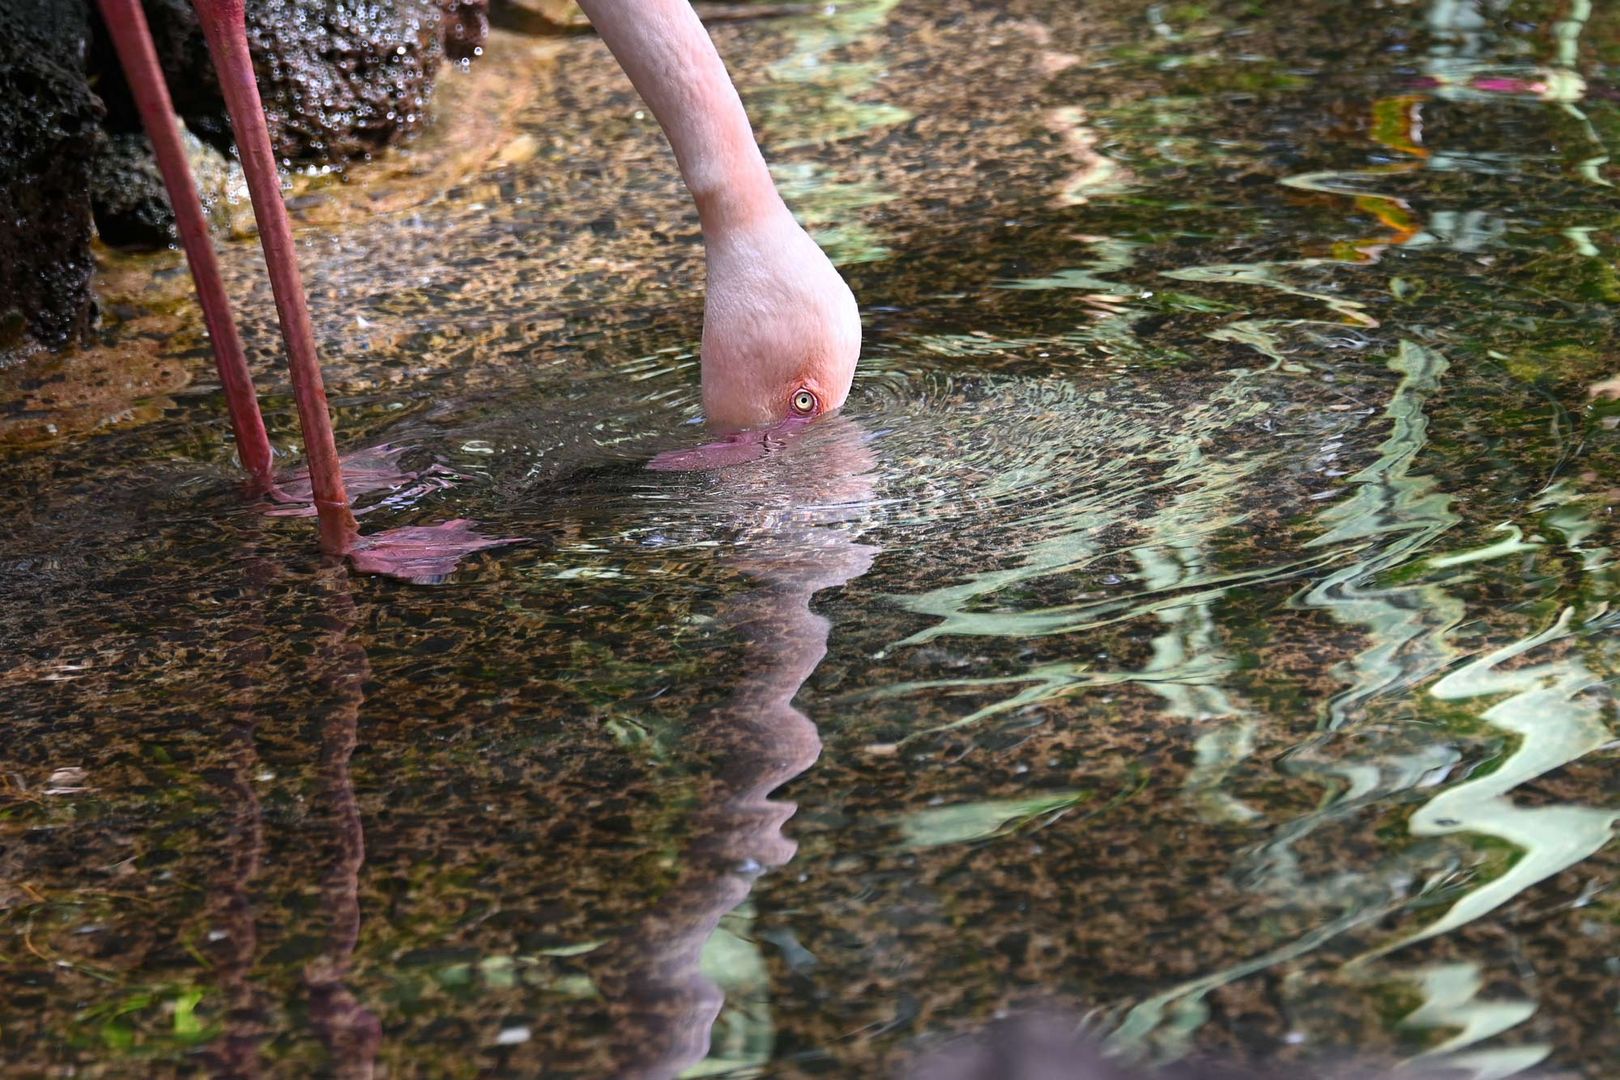 Flamingo bei der Nahrungssuche